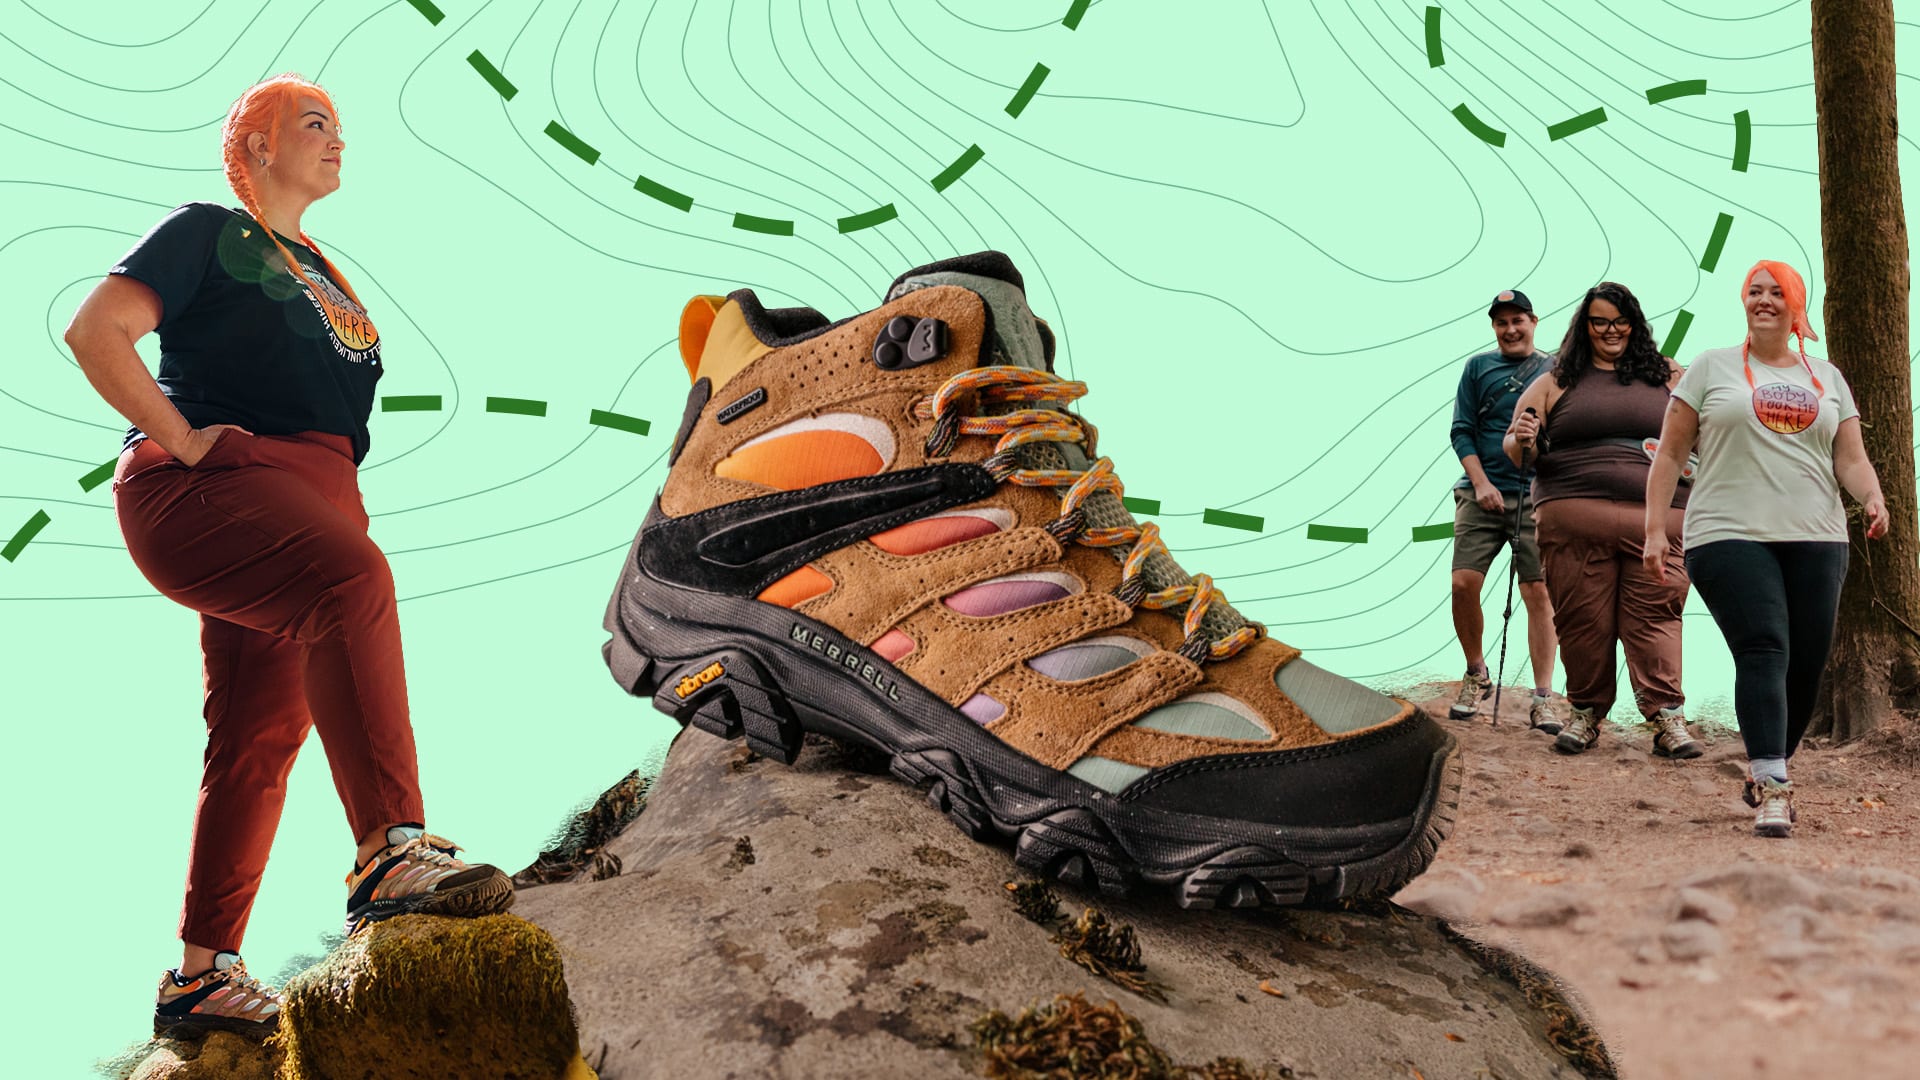 Merrell Moab 3 Hiking Shoe - Women's - Footwear